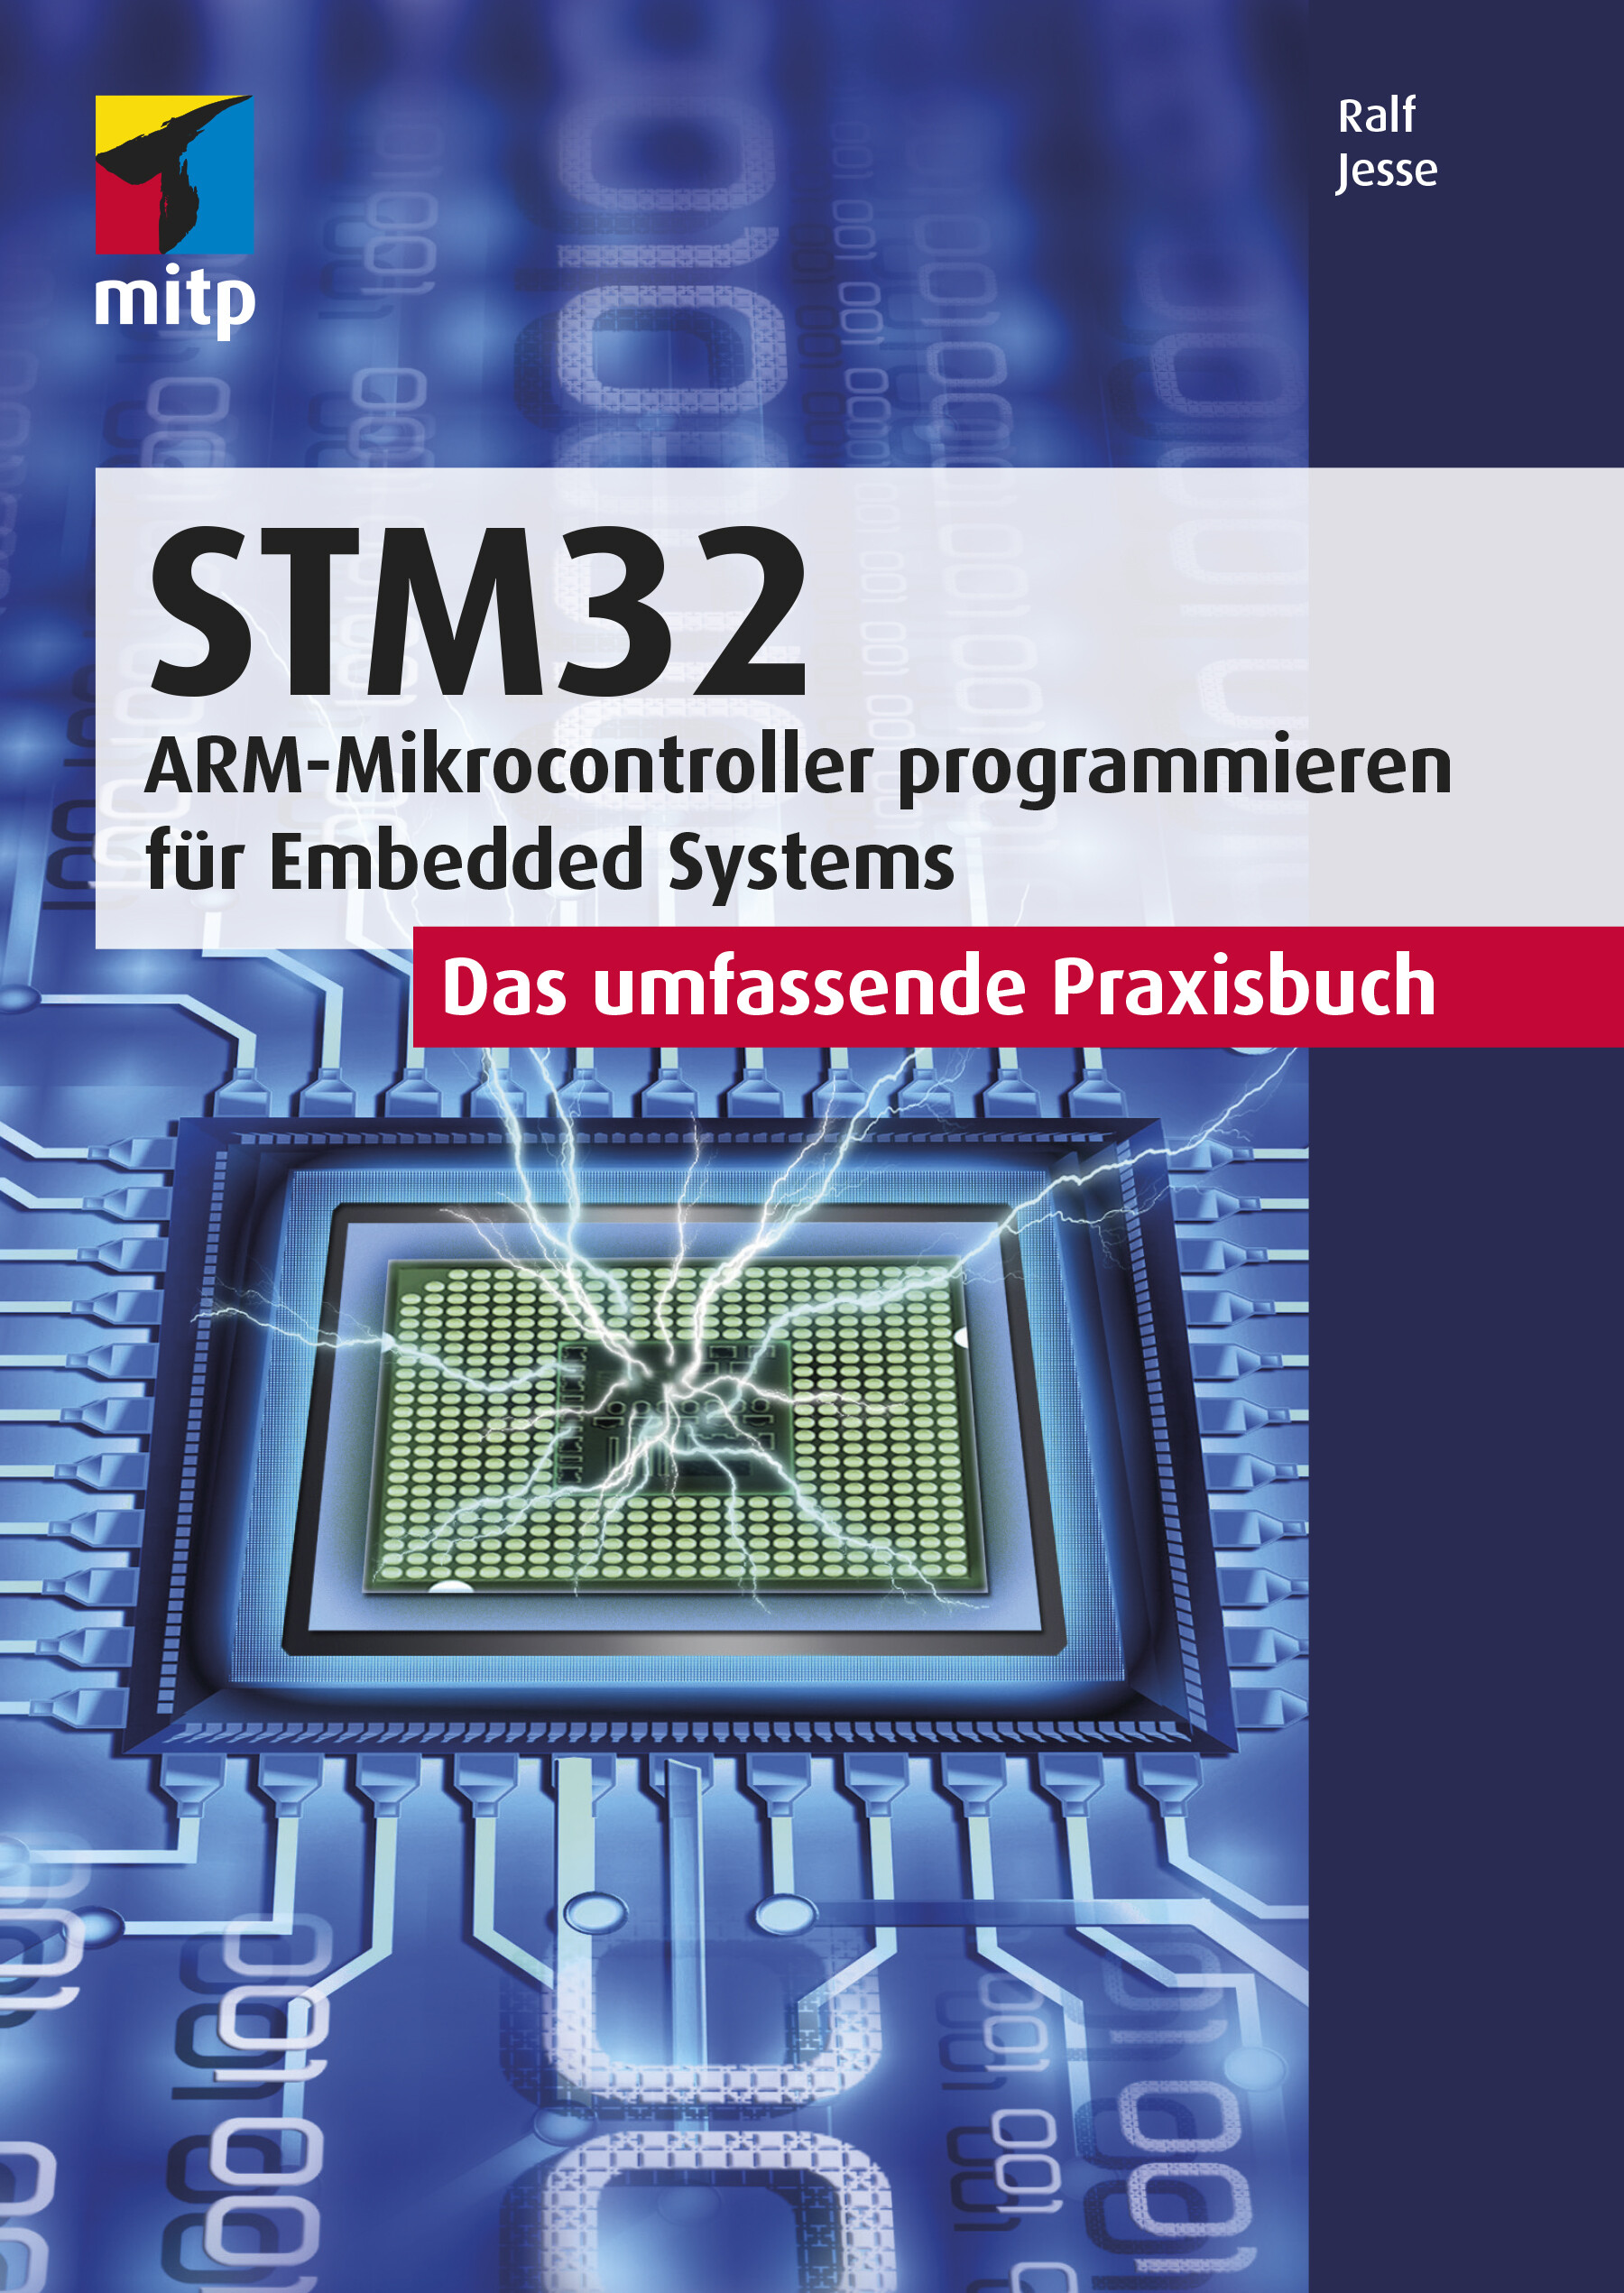 STM32 - Das umfassende Praxisbuch